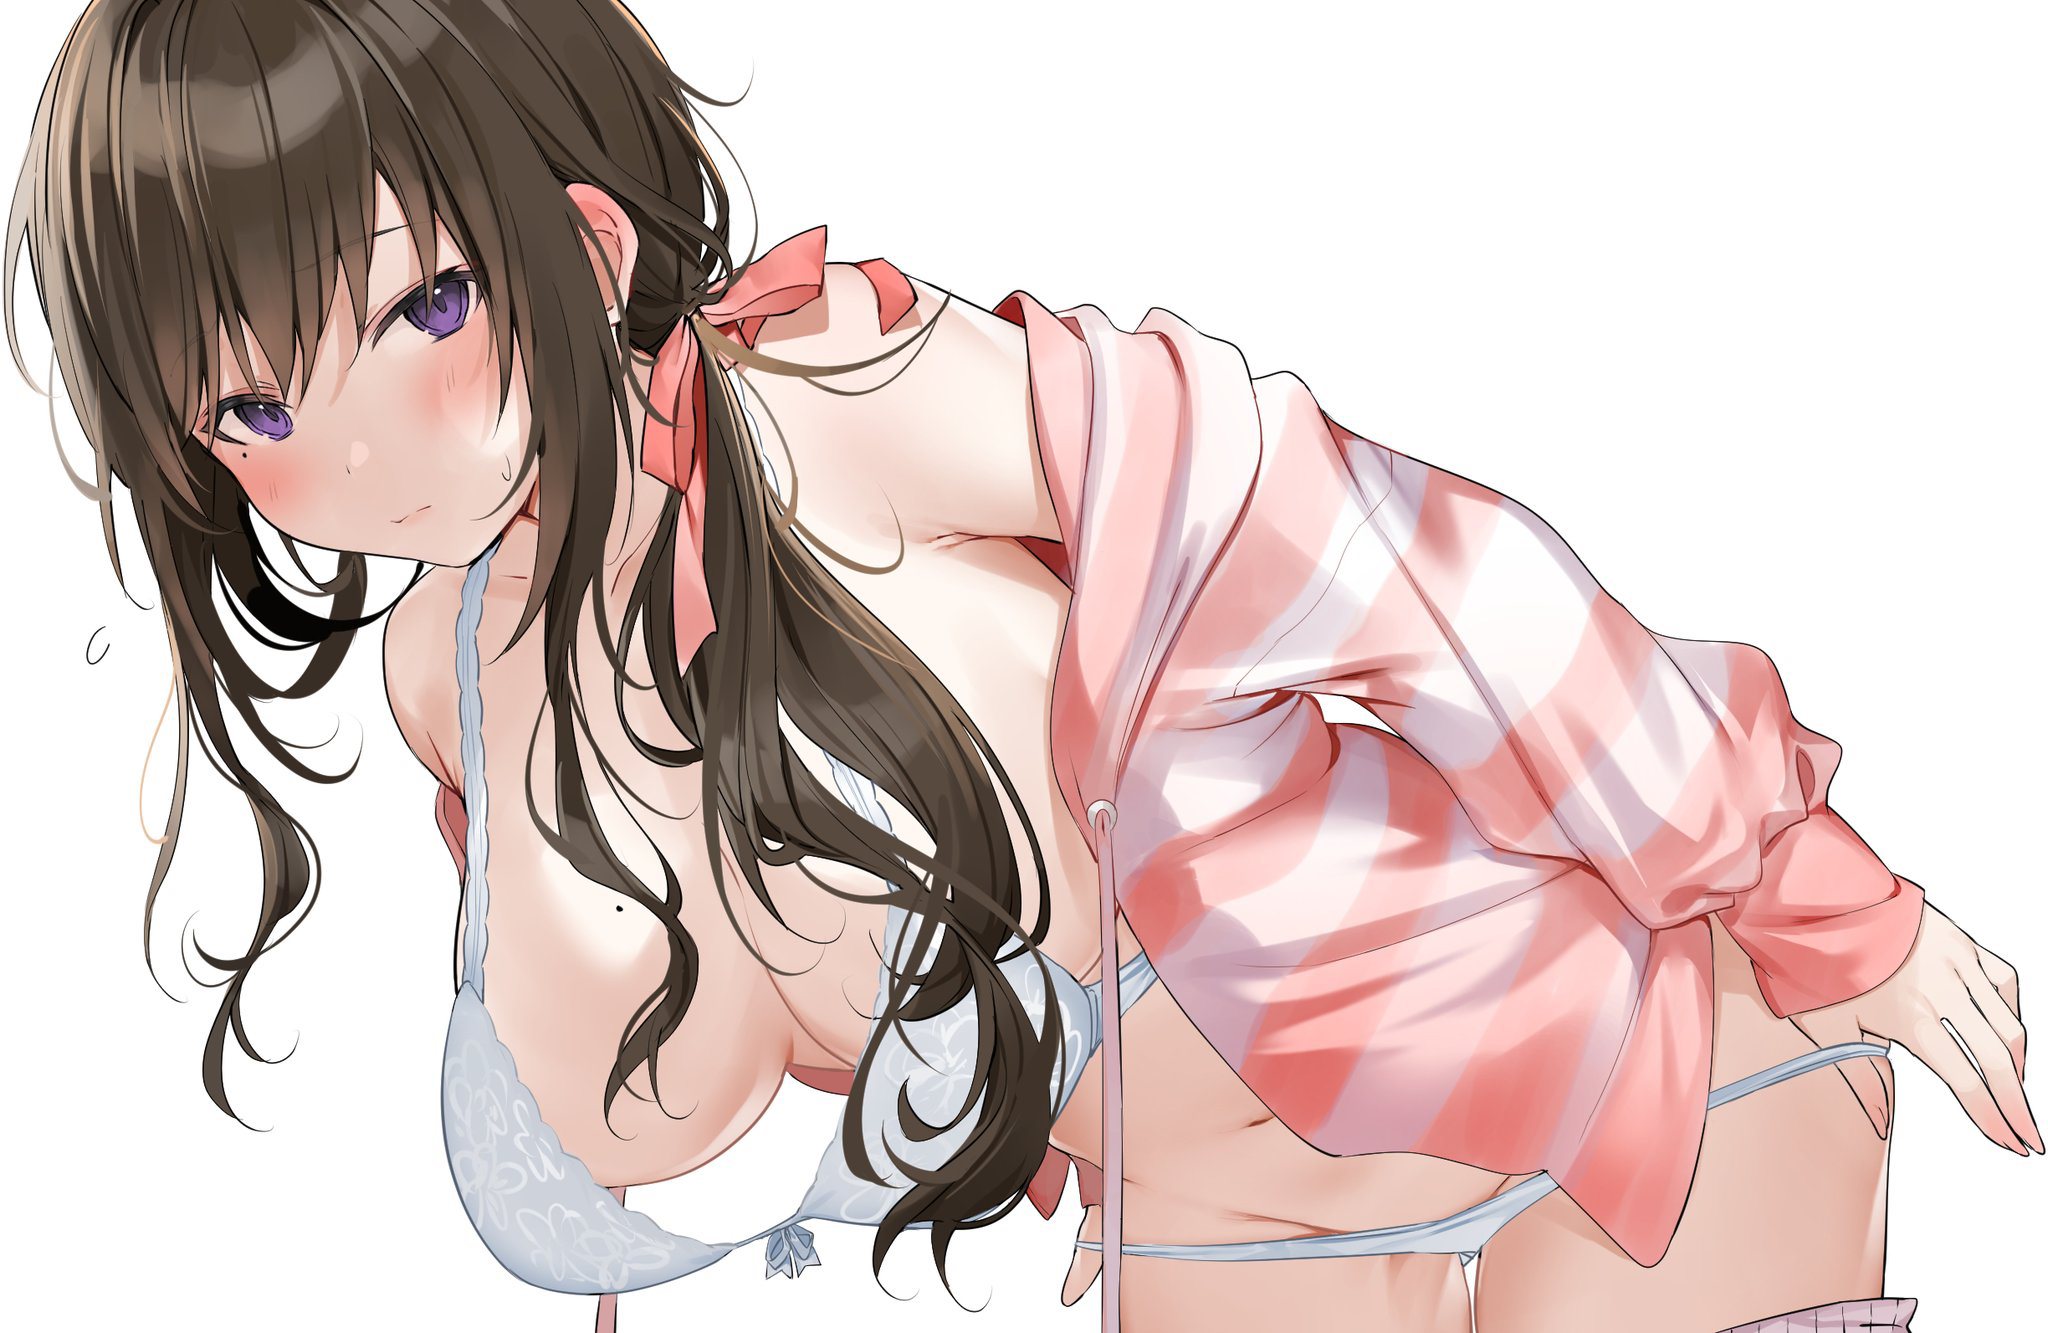 Anime 2048x1333 anime anime girls blushing open jacket underwear undressing hanging boobs bra panties